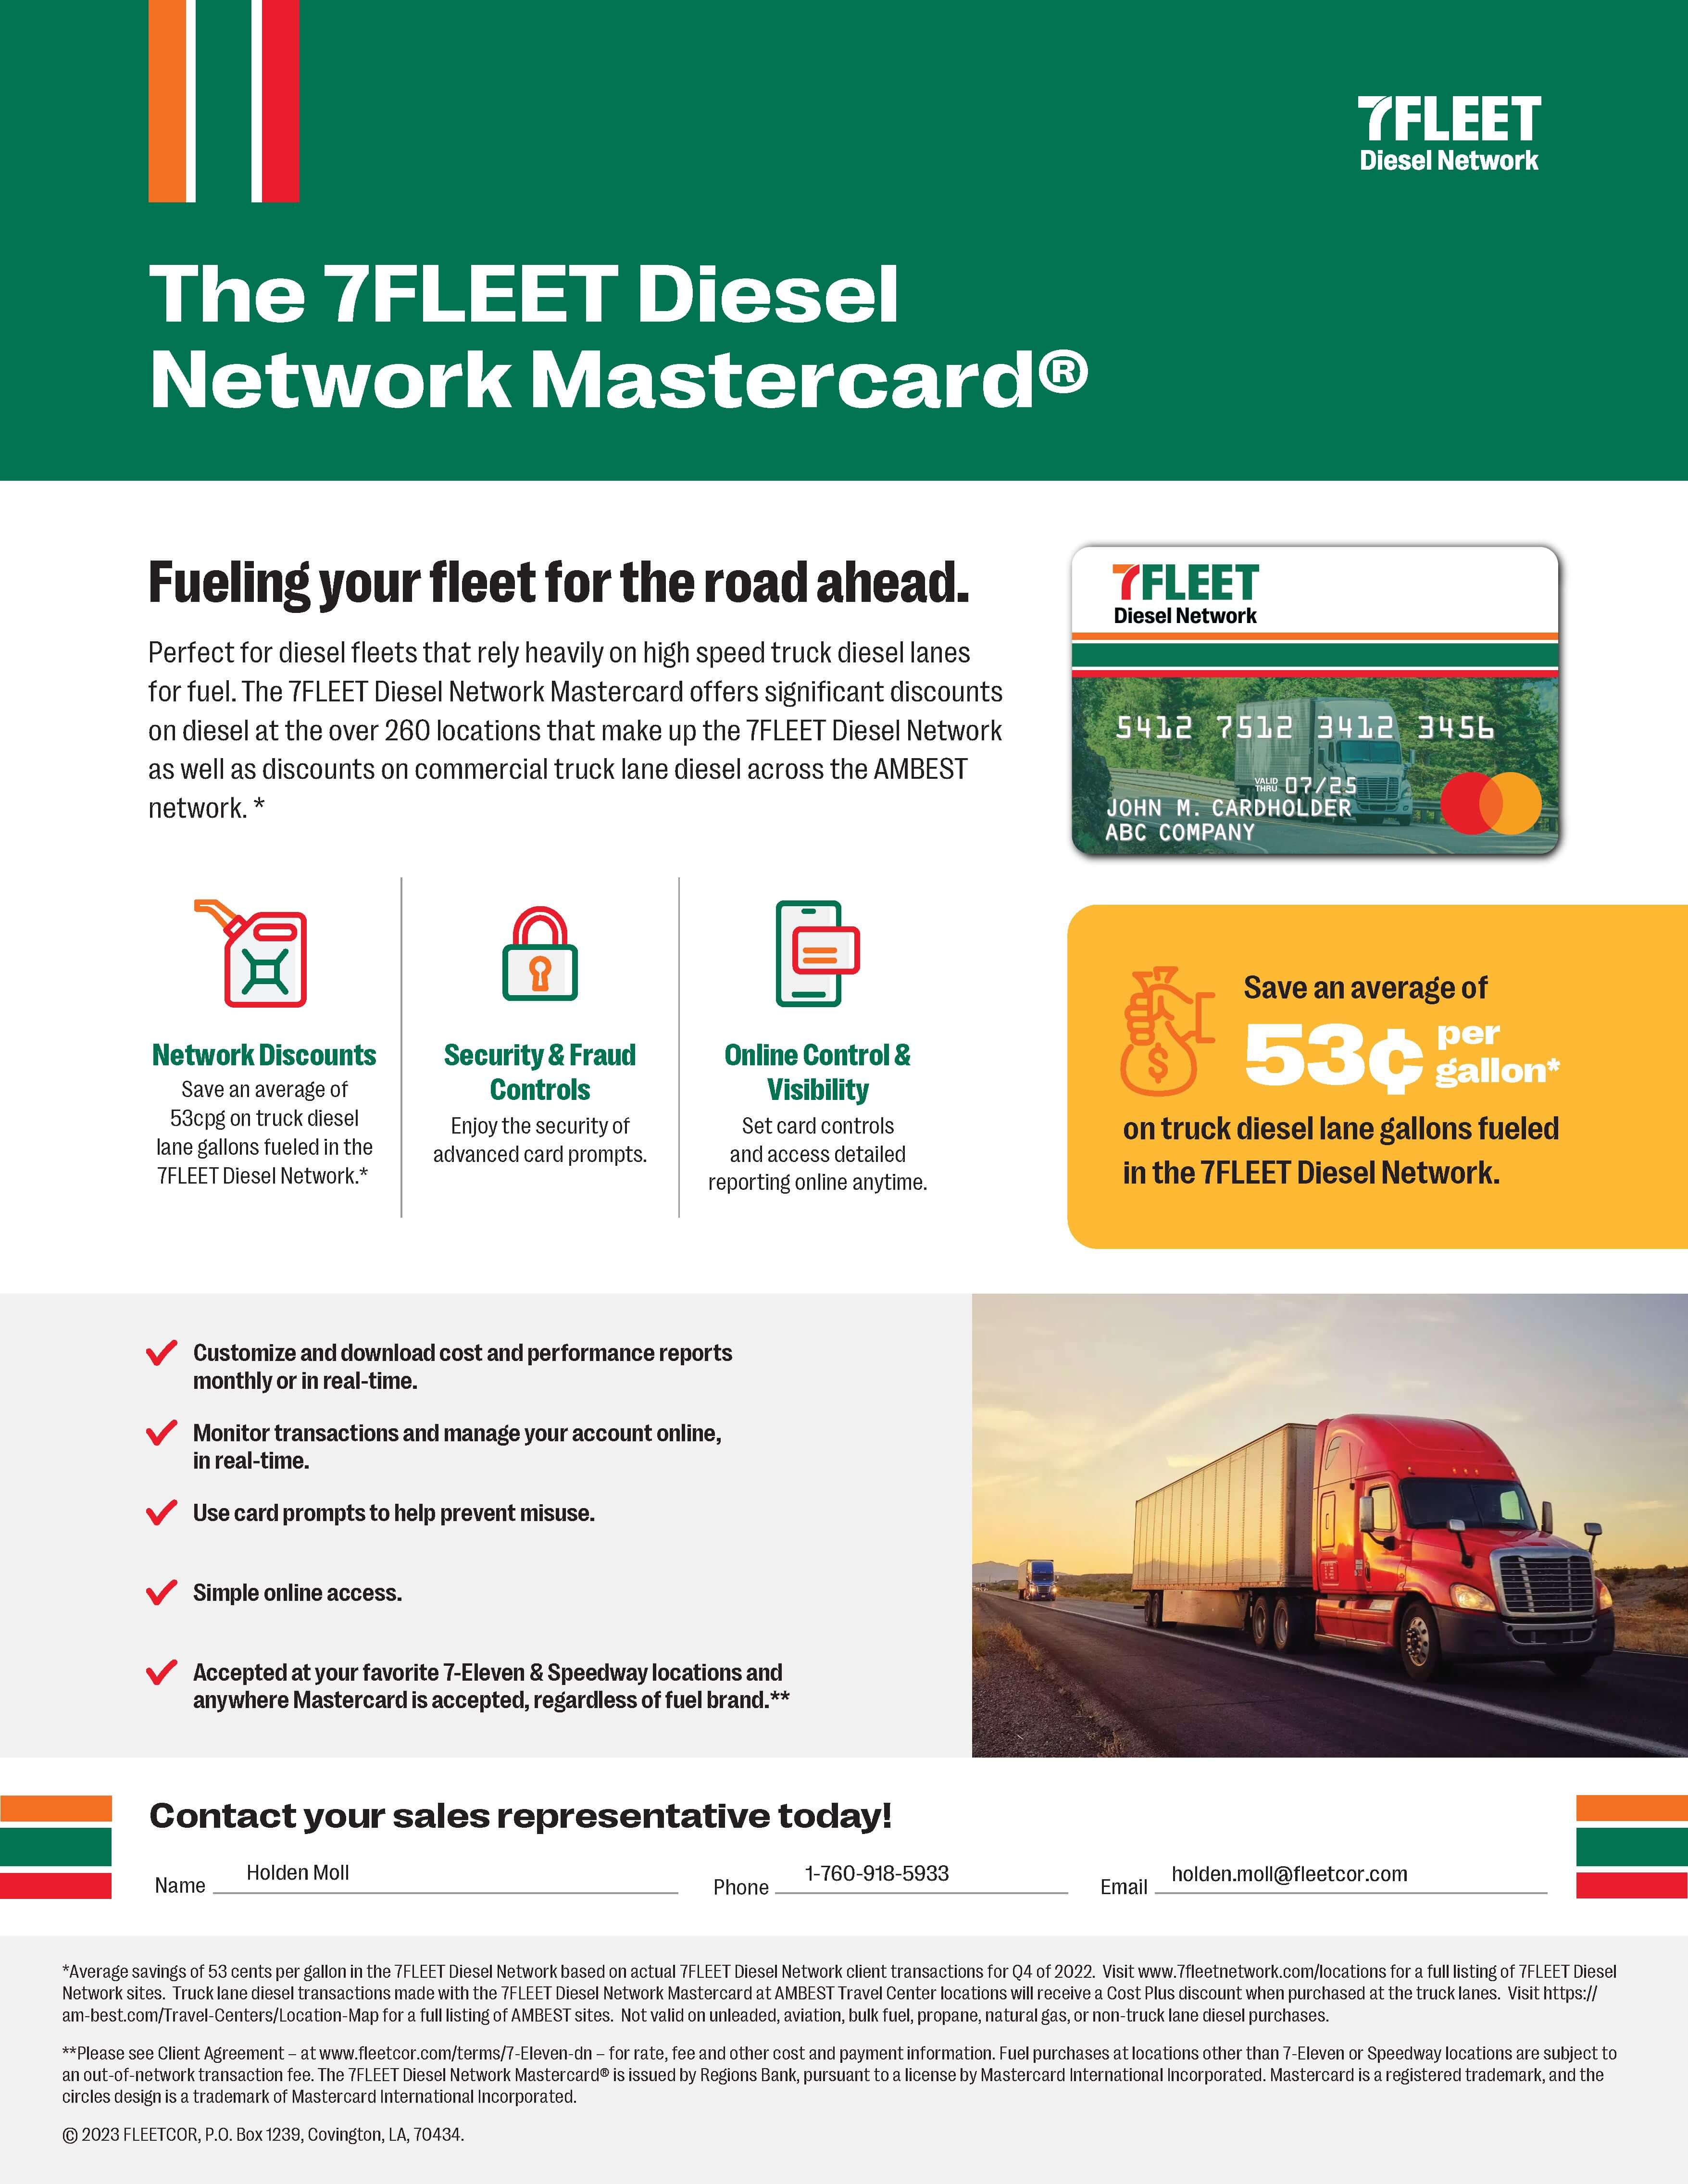 7FLEET Diesel Network Sell Sheet - Holden Moll